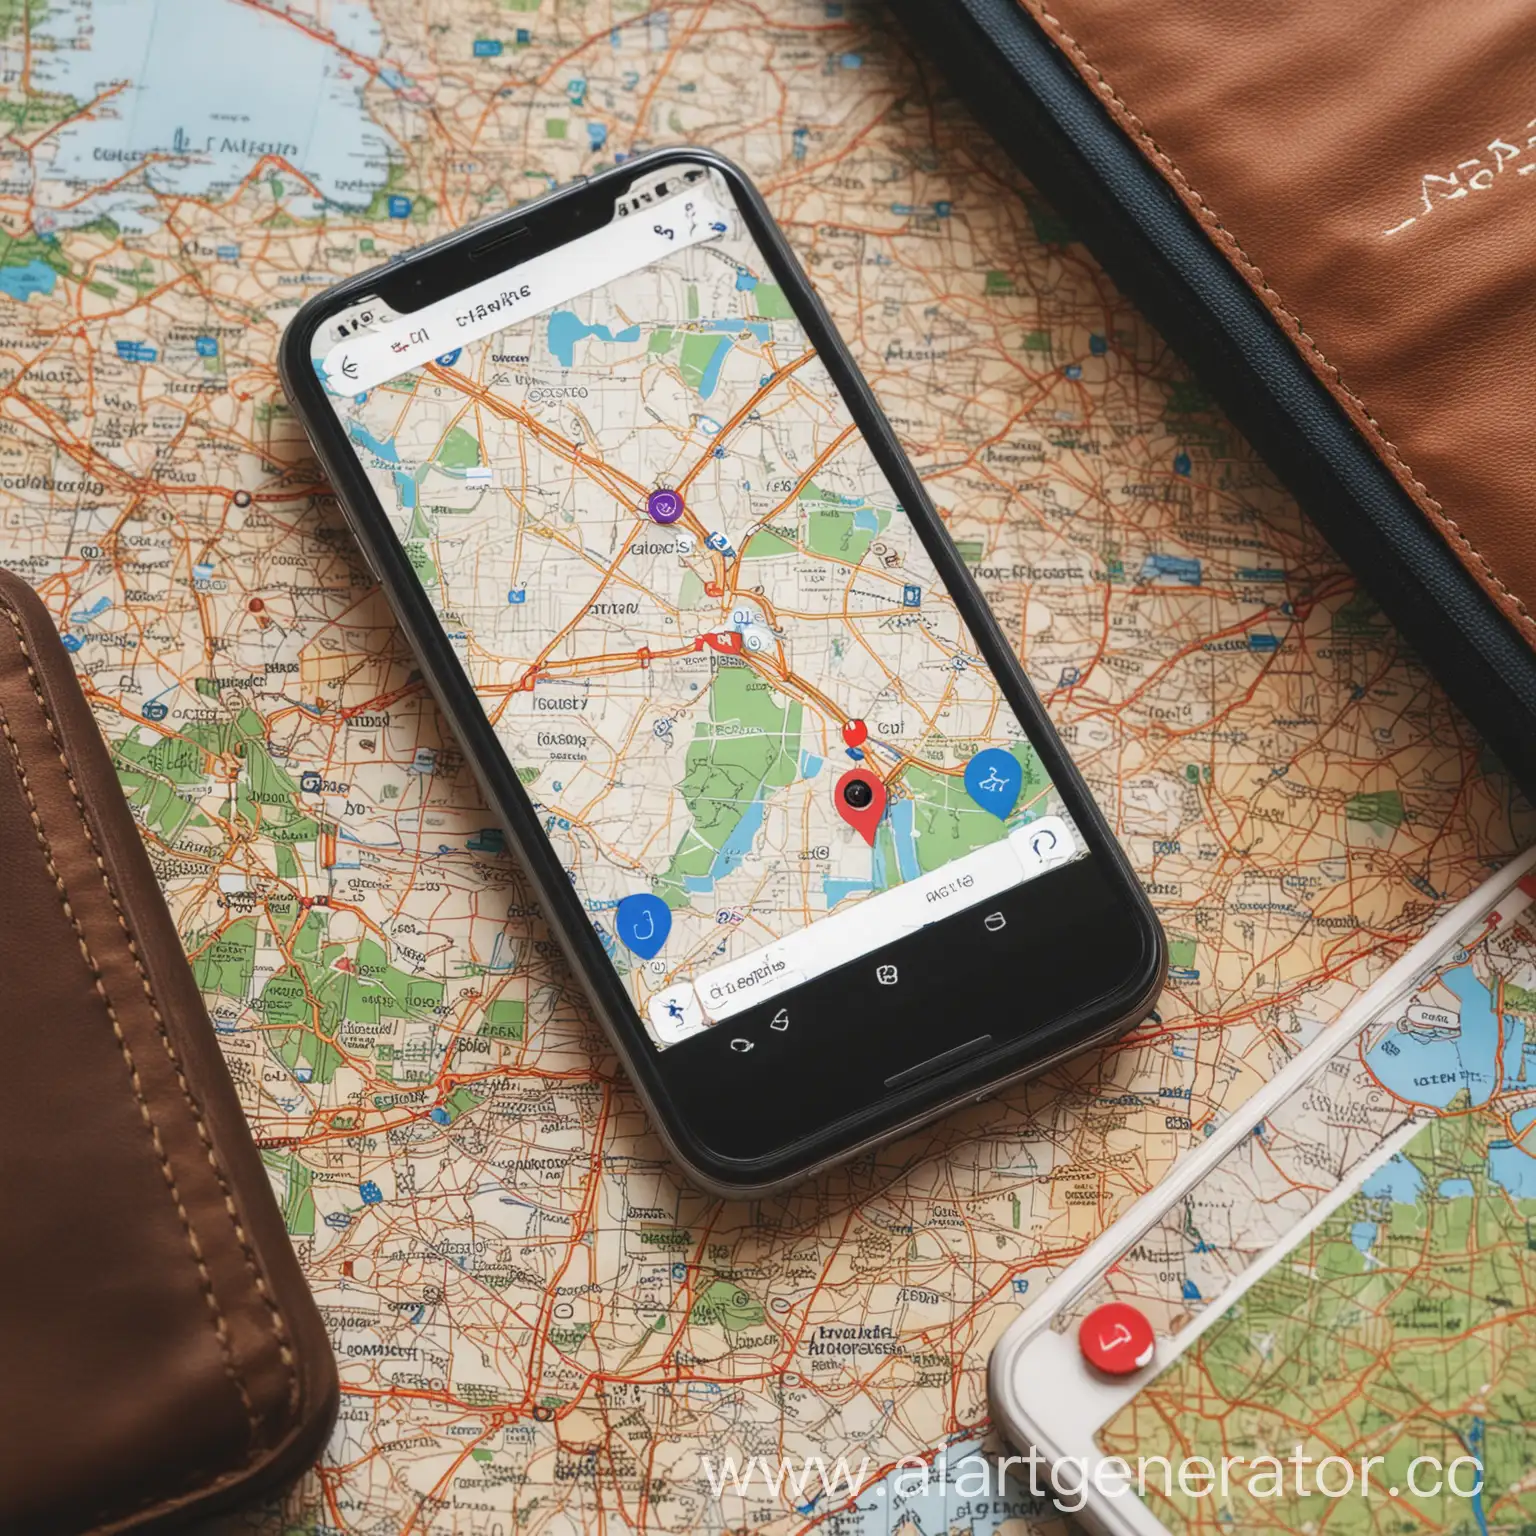 Смартфон на которой открыта карта, а рядом с телефоном лежат предметы связанные с путешествием